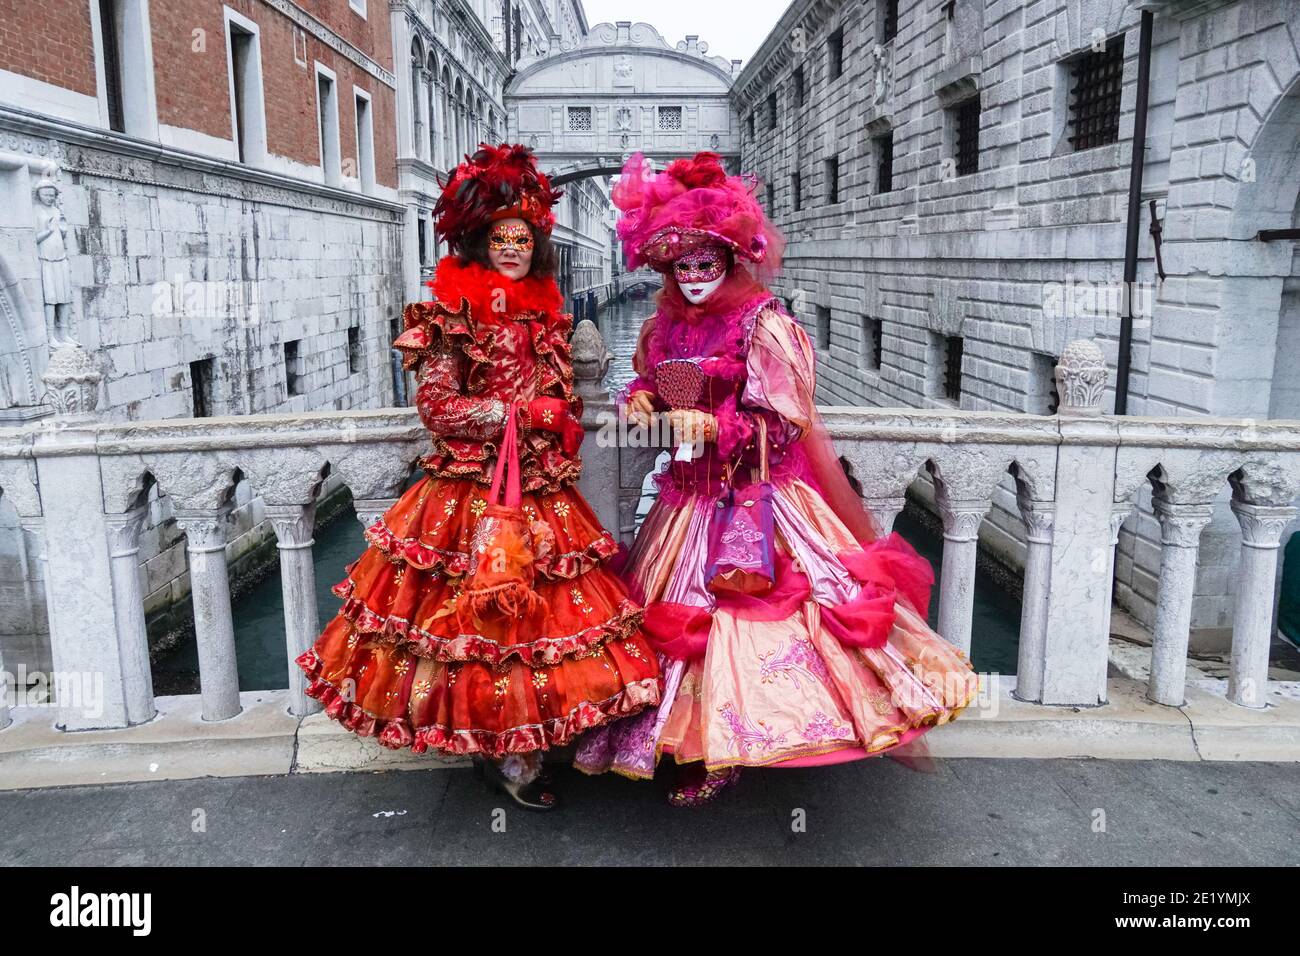 Zwei Frauen in traditionell dekorierten Kostümen und bemalten Masken während des Karnevals in Venedig mit der Seufzerbrücke dahinter, Venedig, Italien Stockfoto